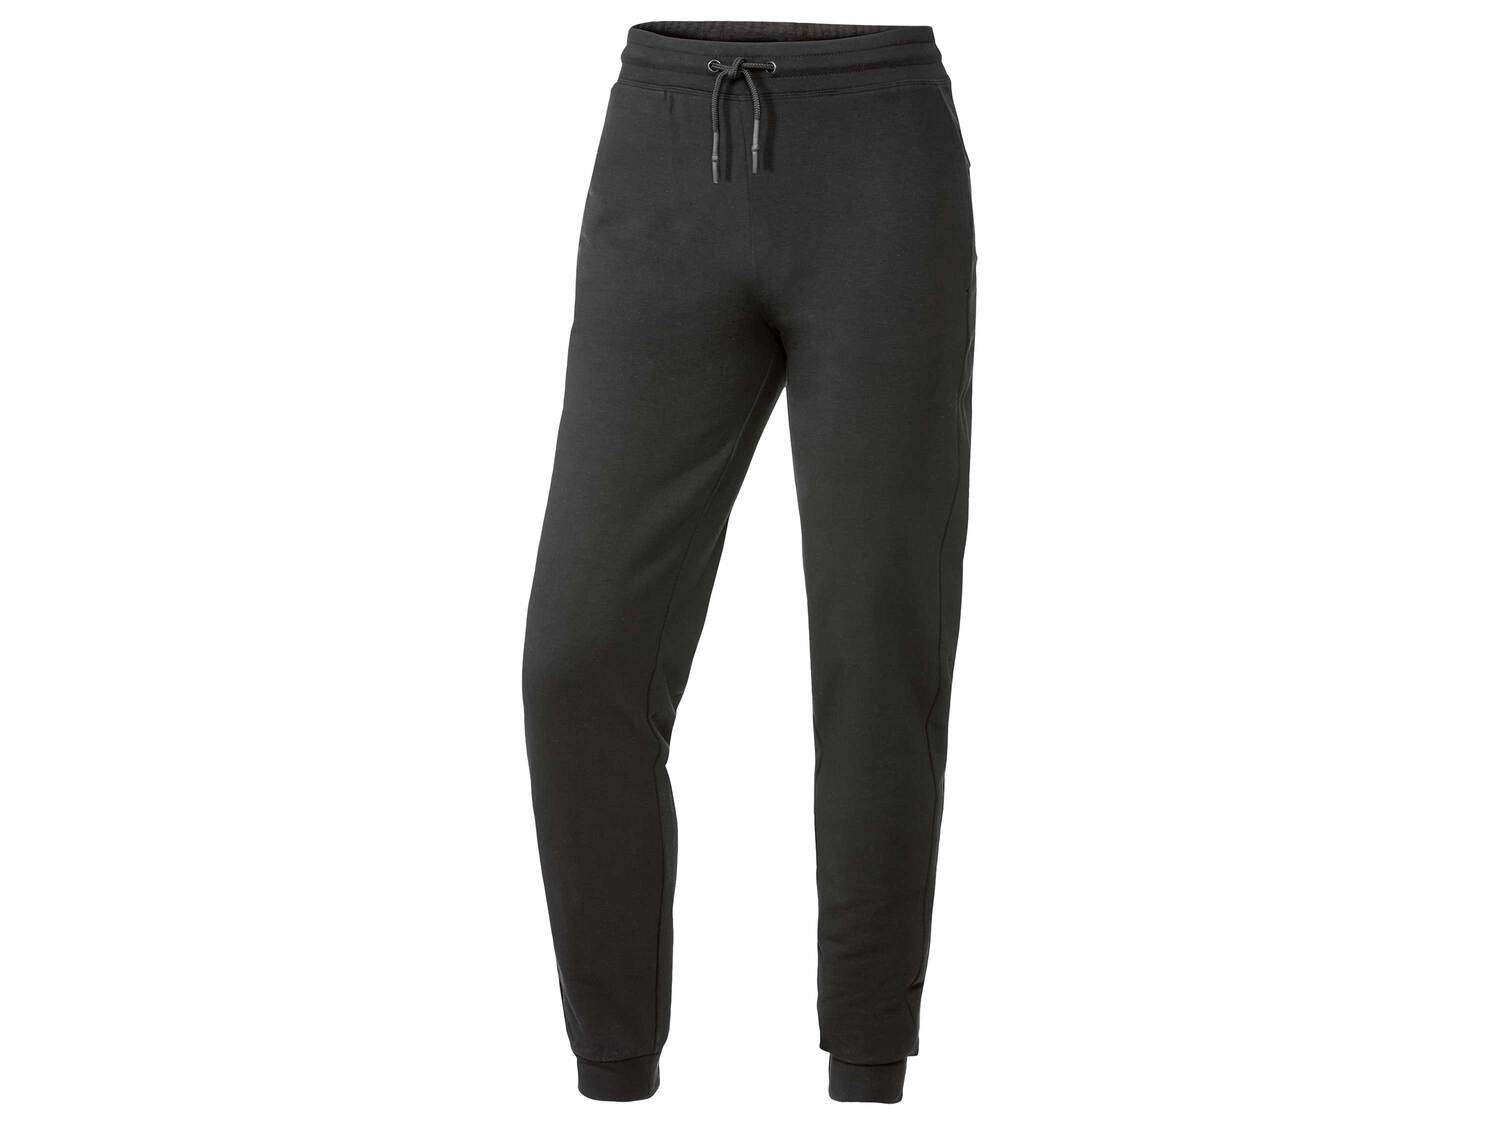 Sweat ou pantalon molletonné , le prix 11.99 € 
- Du S au XL selon modèle
- ...